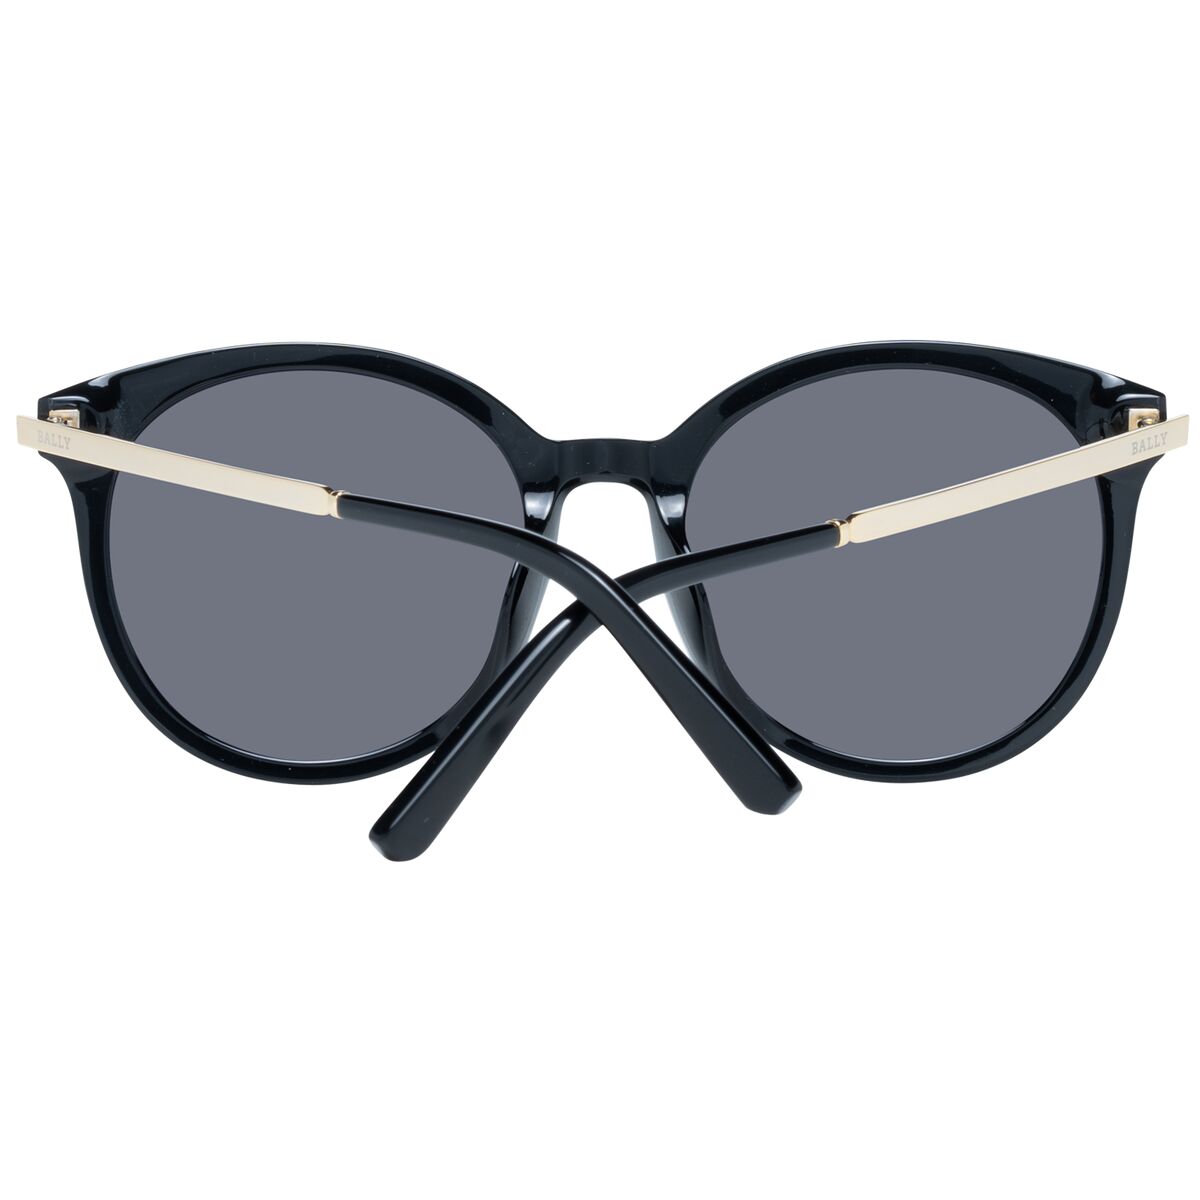 Kaufe Damensonnenbrille Bally BY0046-K 5701A bei AWK Flagship um € 114.00